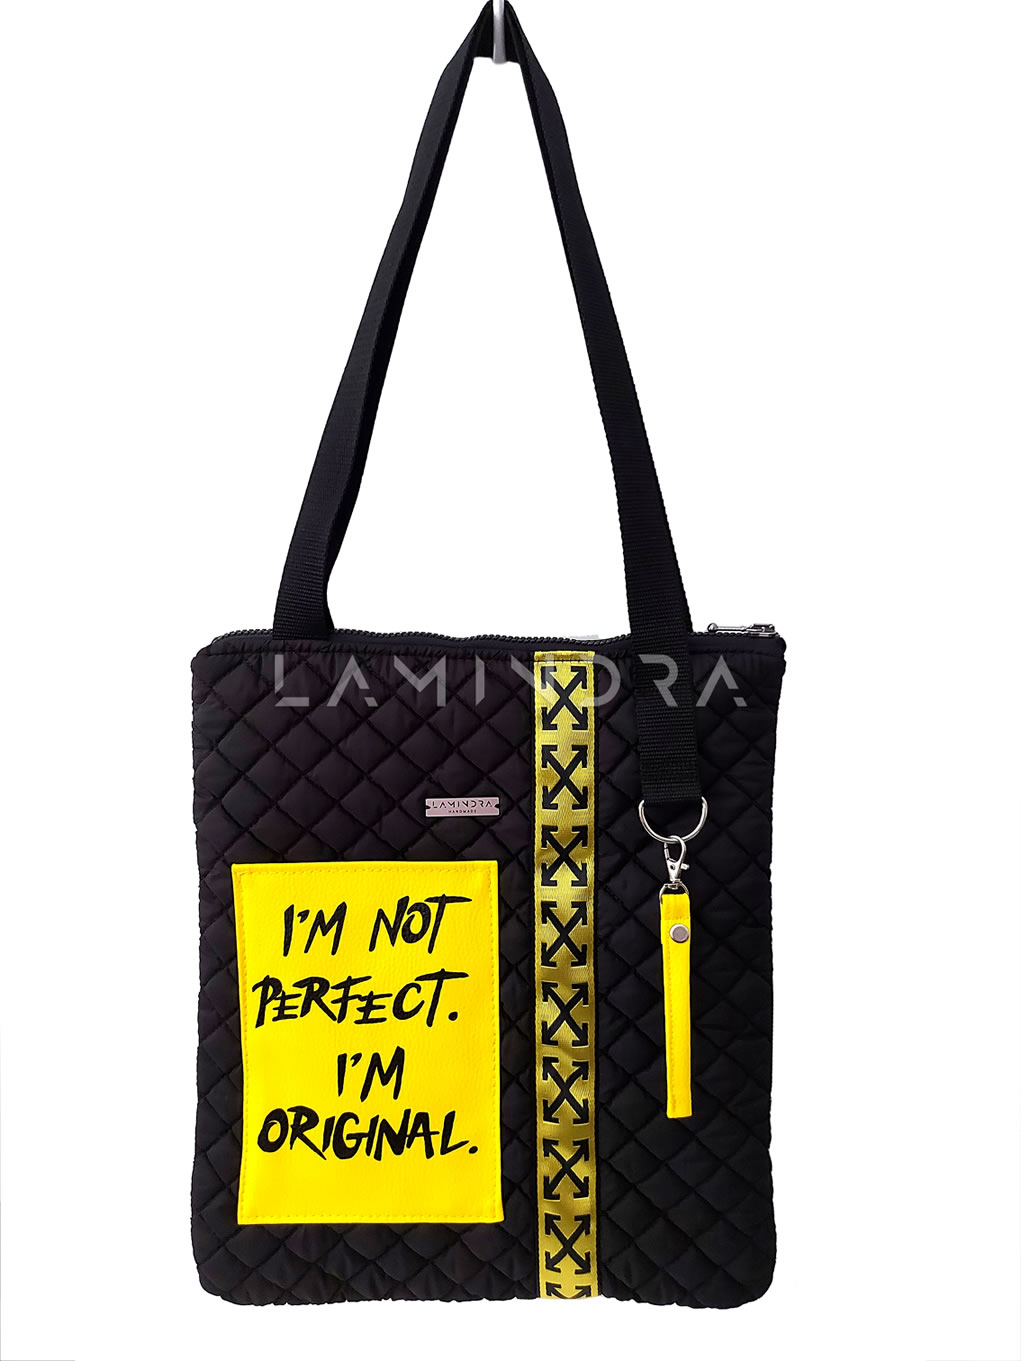 Táskák, hátizsákok, kézműves termékek: TA023, Tote Bag - I'M ORIGINAL - Vízlepergetős táska